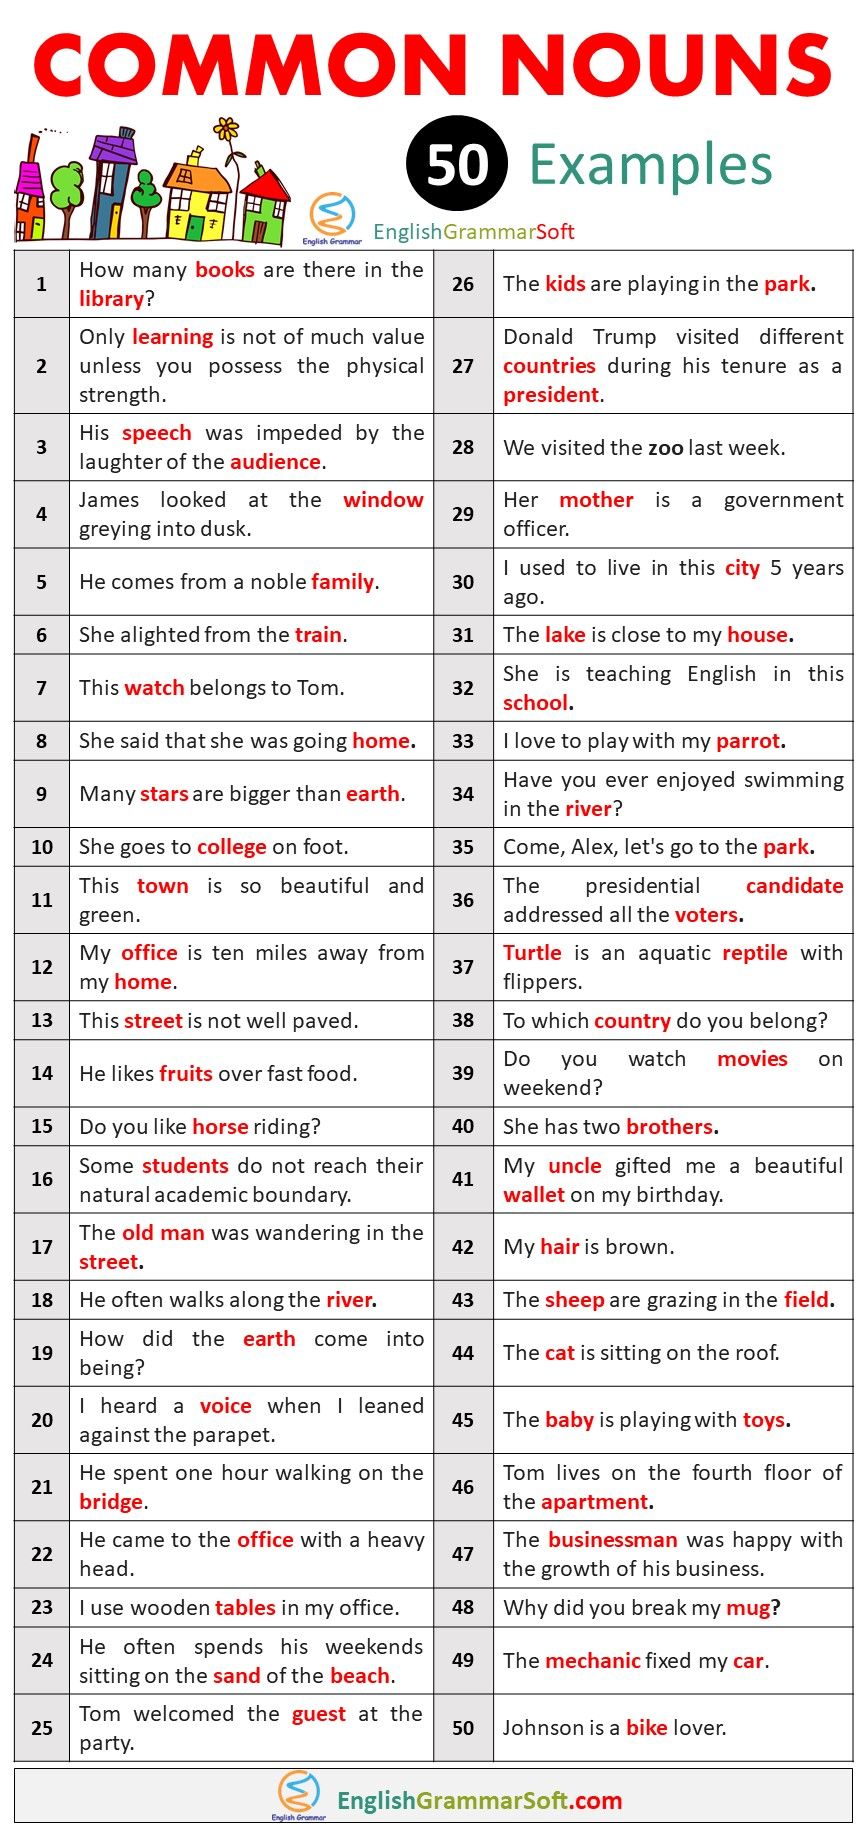 Common Noun Examples (50 Common Noun Sentences)